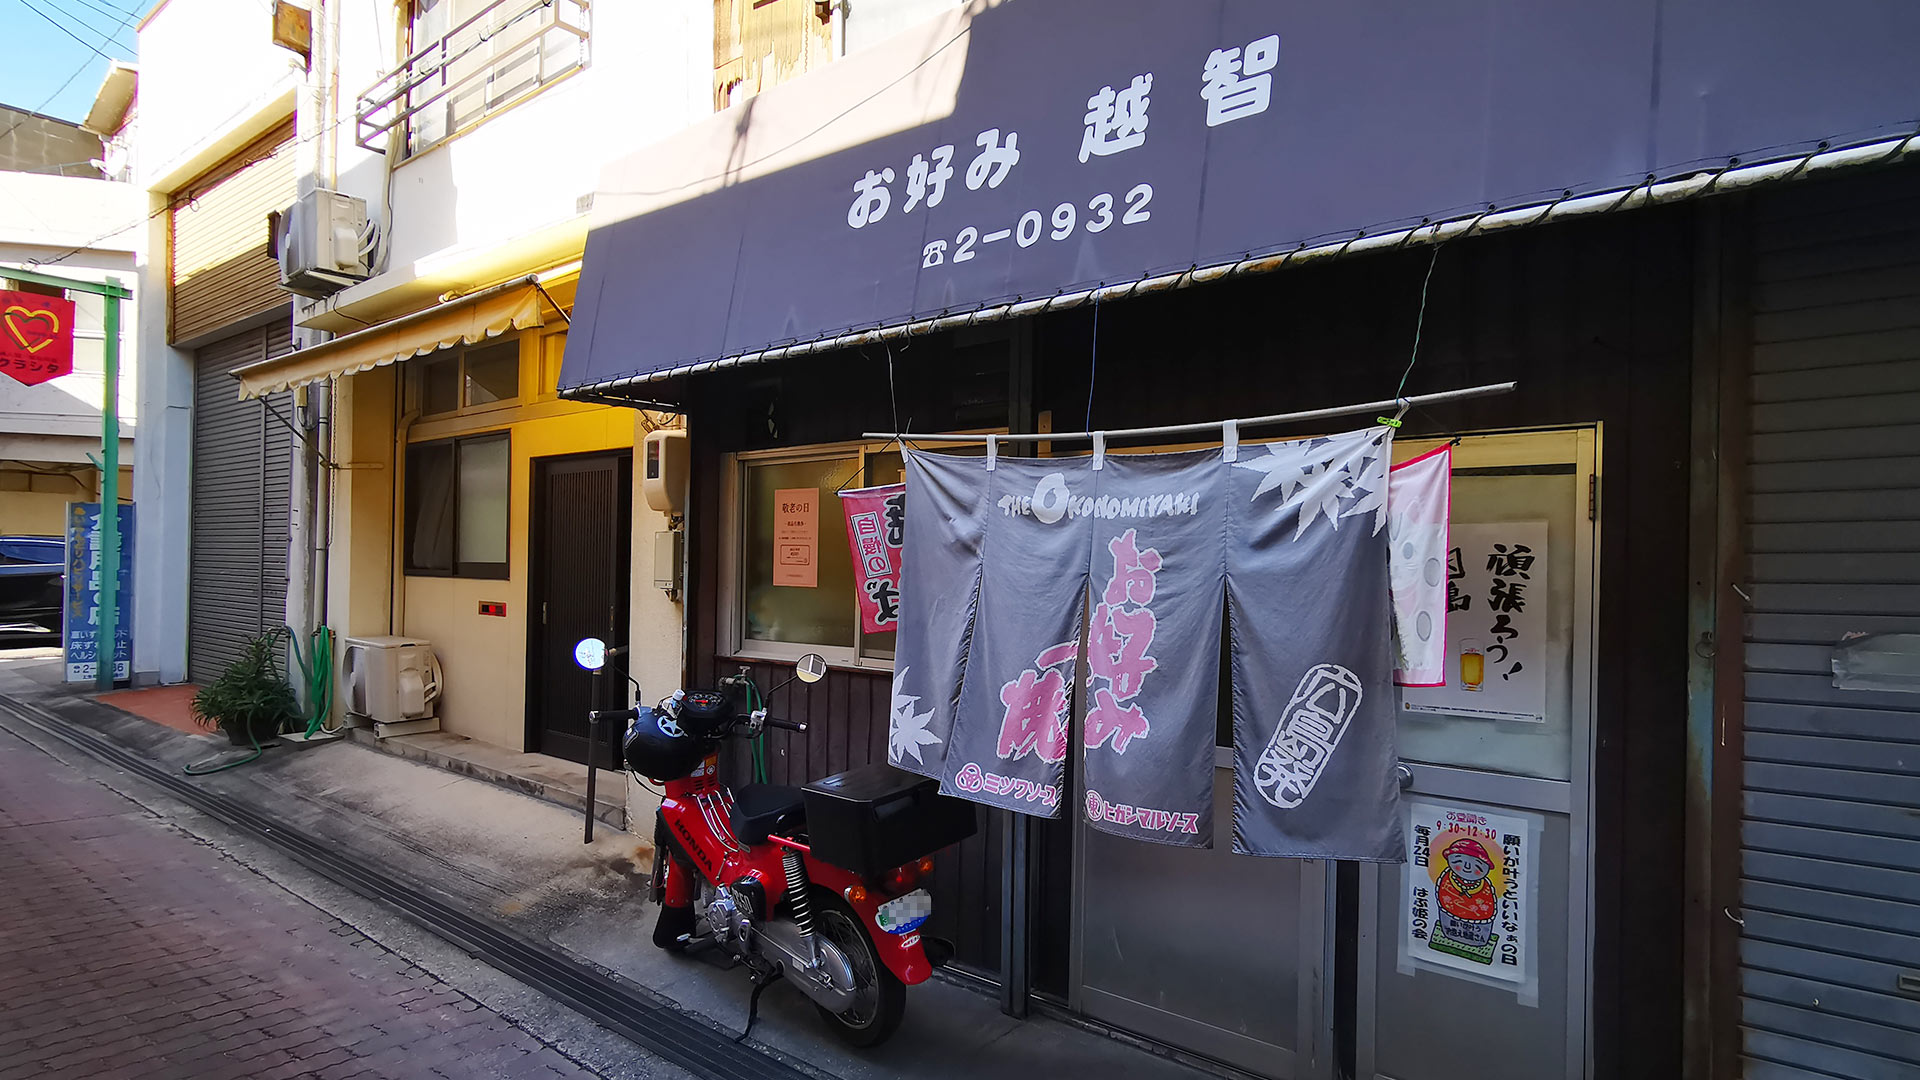 越智お好み焼き店は、因島の土生港ターミナルビルから徒歩で５分の場所にあります。